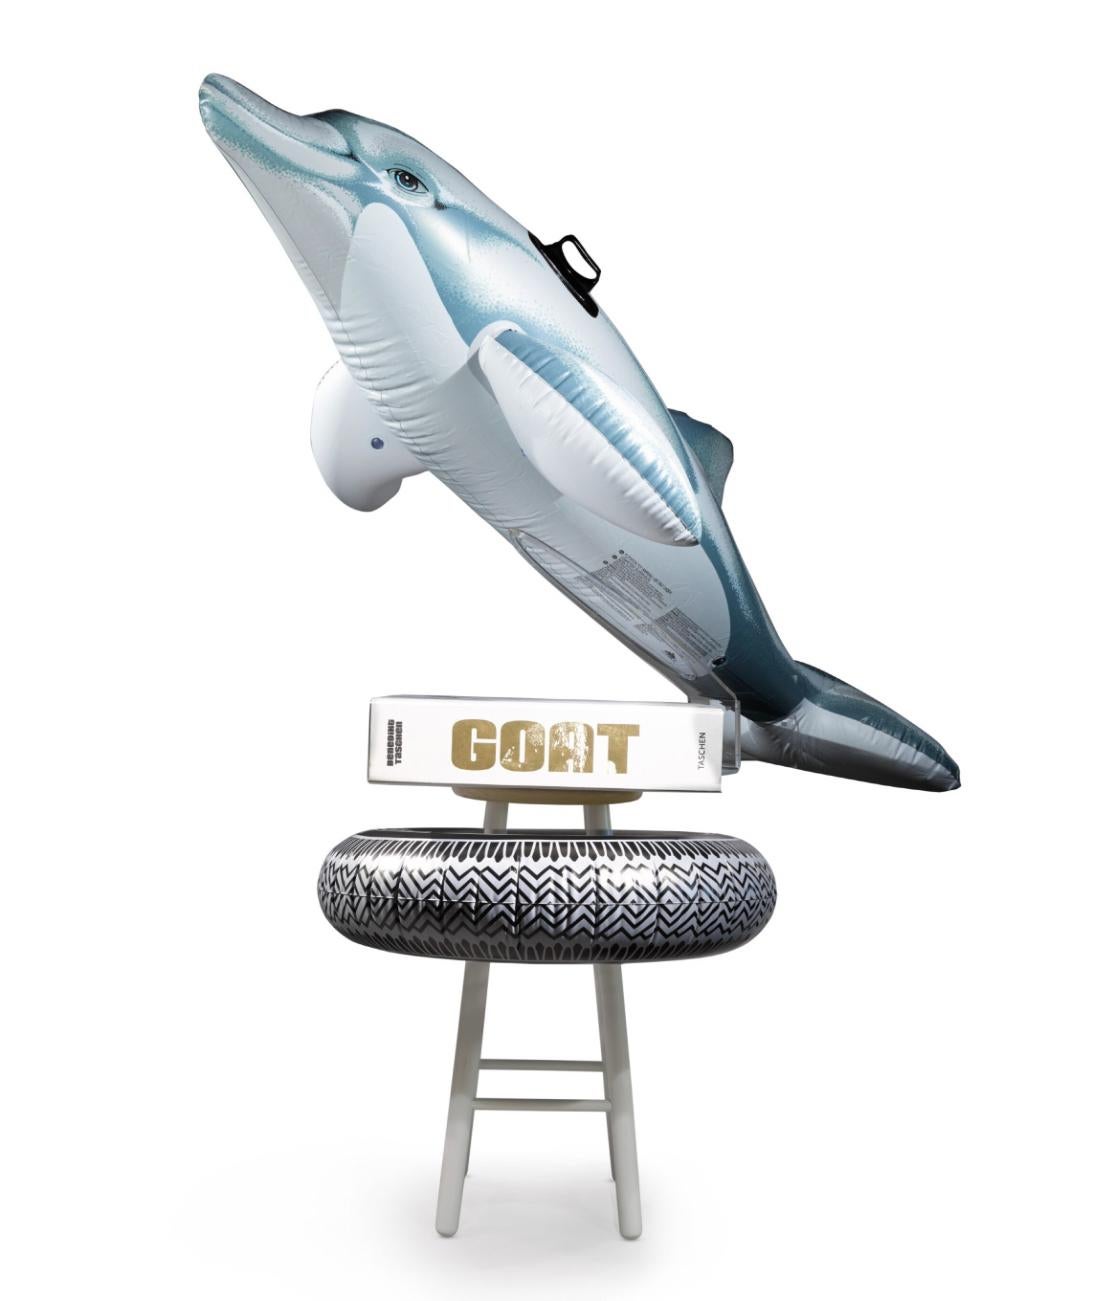 JEFF KOONS (1955-Gegenwart)

Die luxuriöse "Champ's Edition" Set, bestehend aus der Skulptur Radial Champ, bestehend aus einem Holzhocker, einem aufblasbaren Delphin und einem Reifenschwimmer, einer Luftpumpe und einem Ständer aus Lucit, begleitet